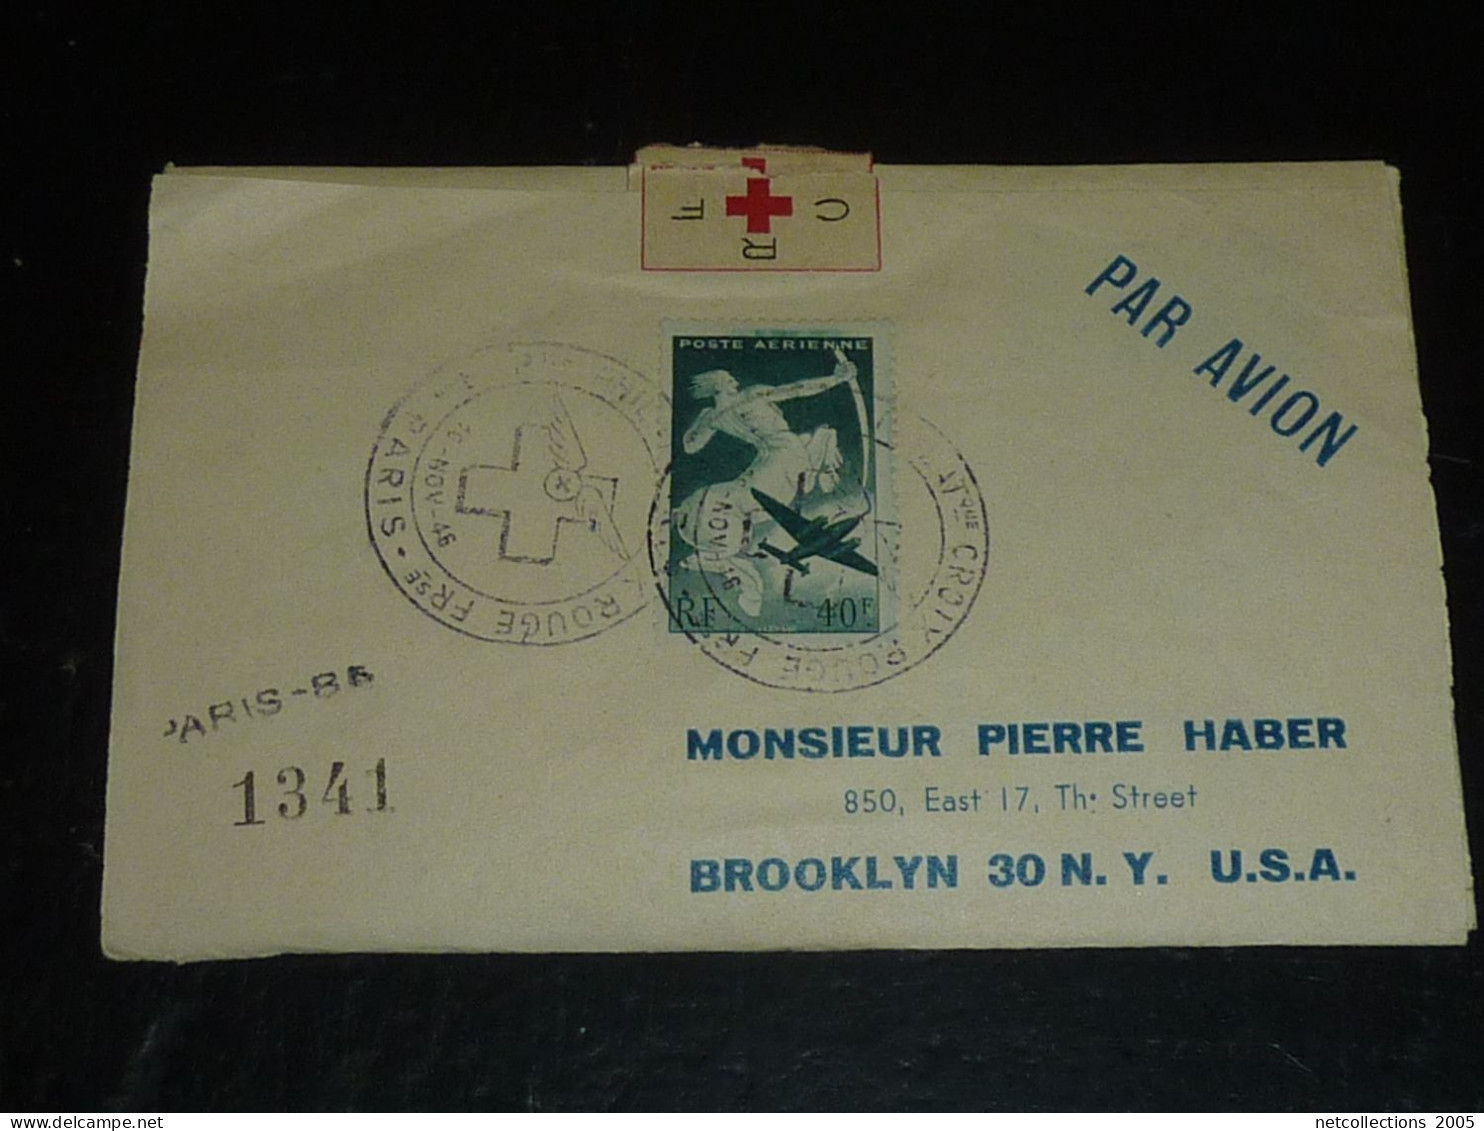 TOUR DU MONDE; CROIX ROUGE - PARIS NEW-YORK 18/11/1946 AU 21/11/1946 - NEW-YORK BRUXELLES - BRUXELLES PARIS ARRIVEE (CB) - Croix Rouge